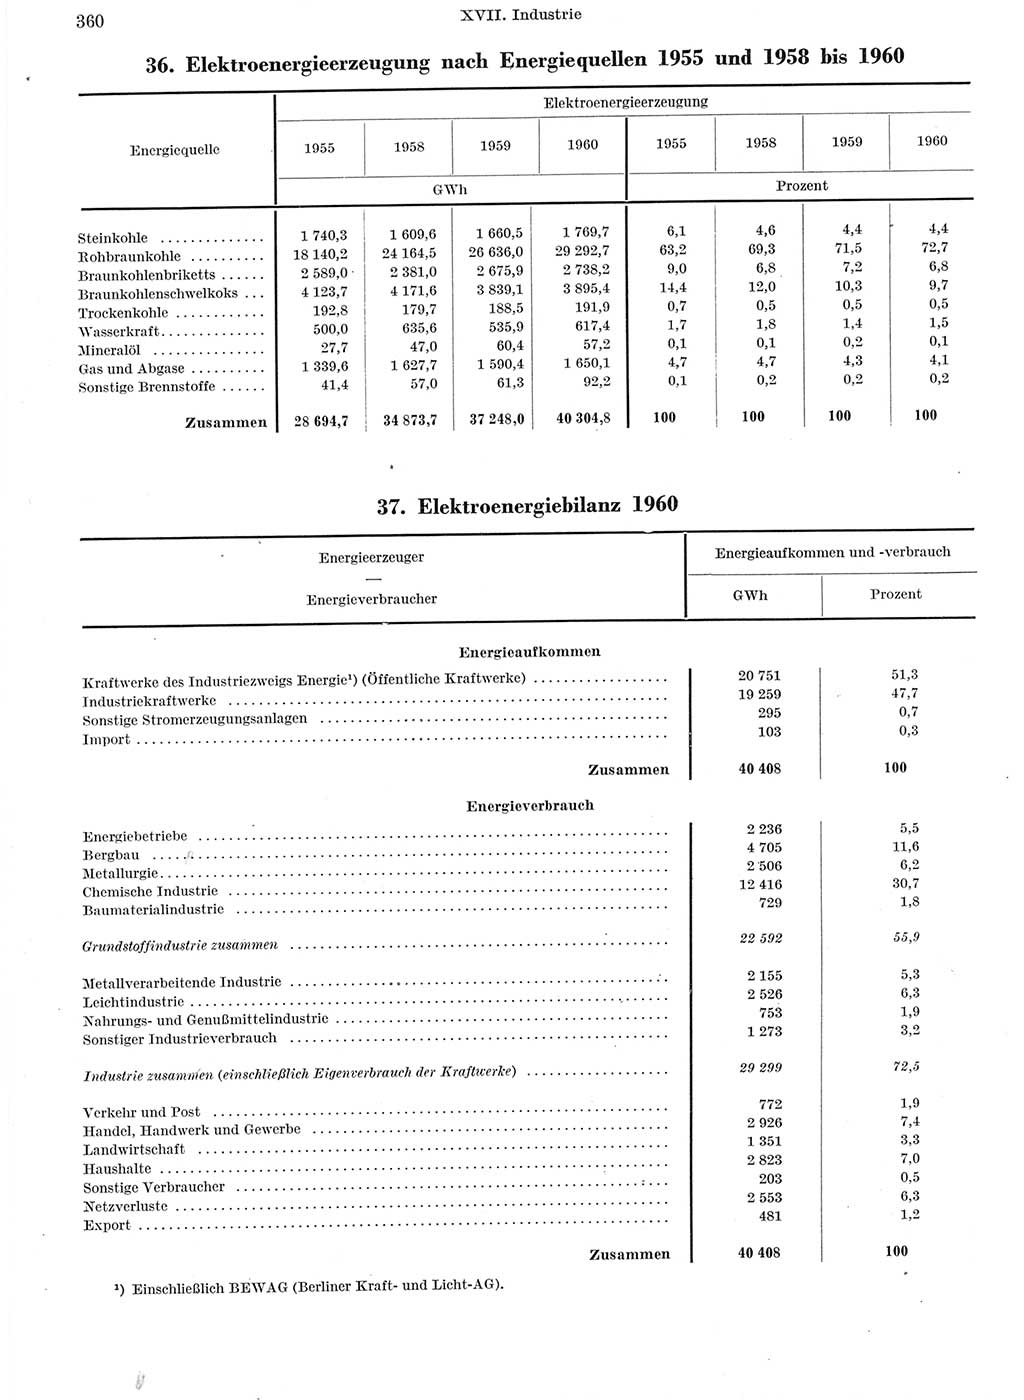 Statistisches Jahrbuch der Deutschen Demokratischen Republik (DDR) 1960-1961, Seite 360 (Stat. Jb. DDR 1960-1961, S. 360)